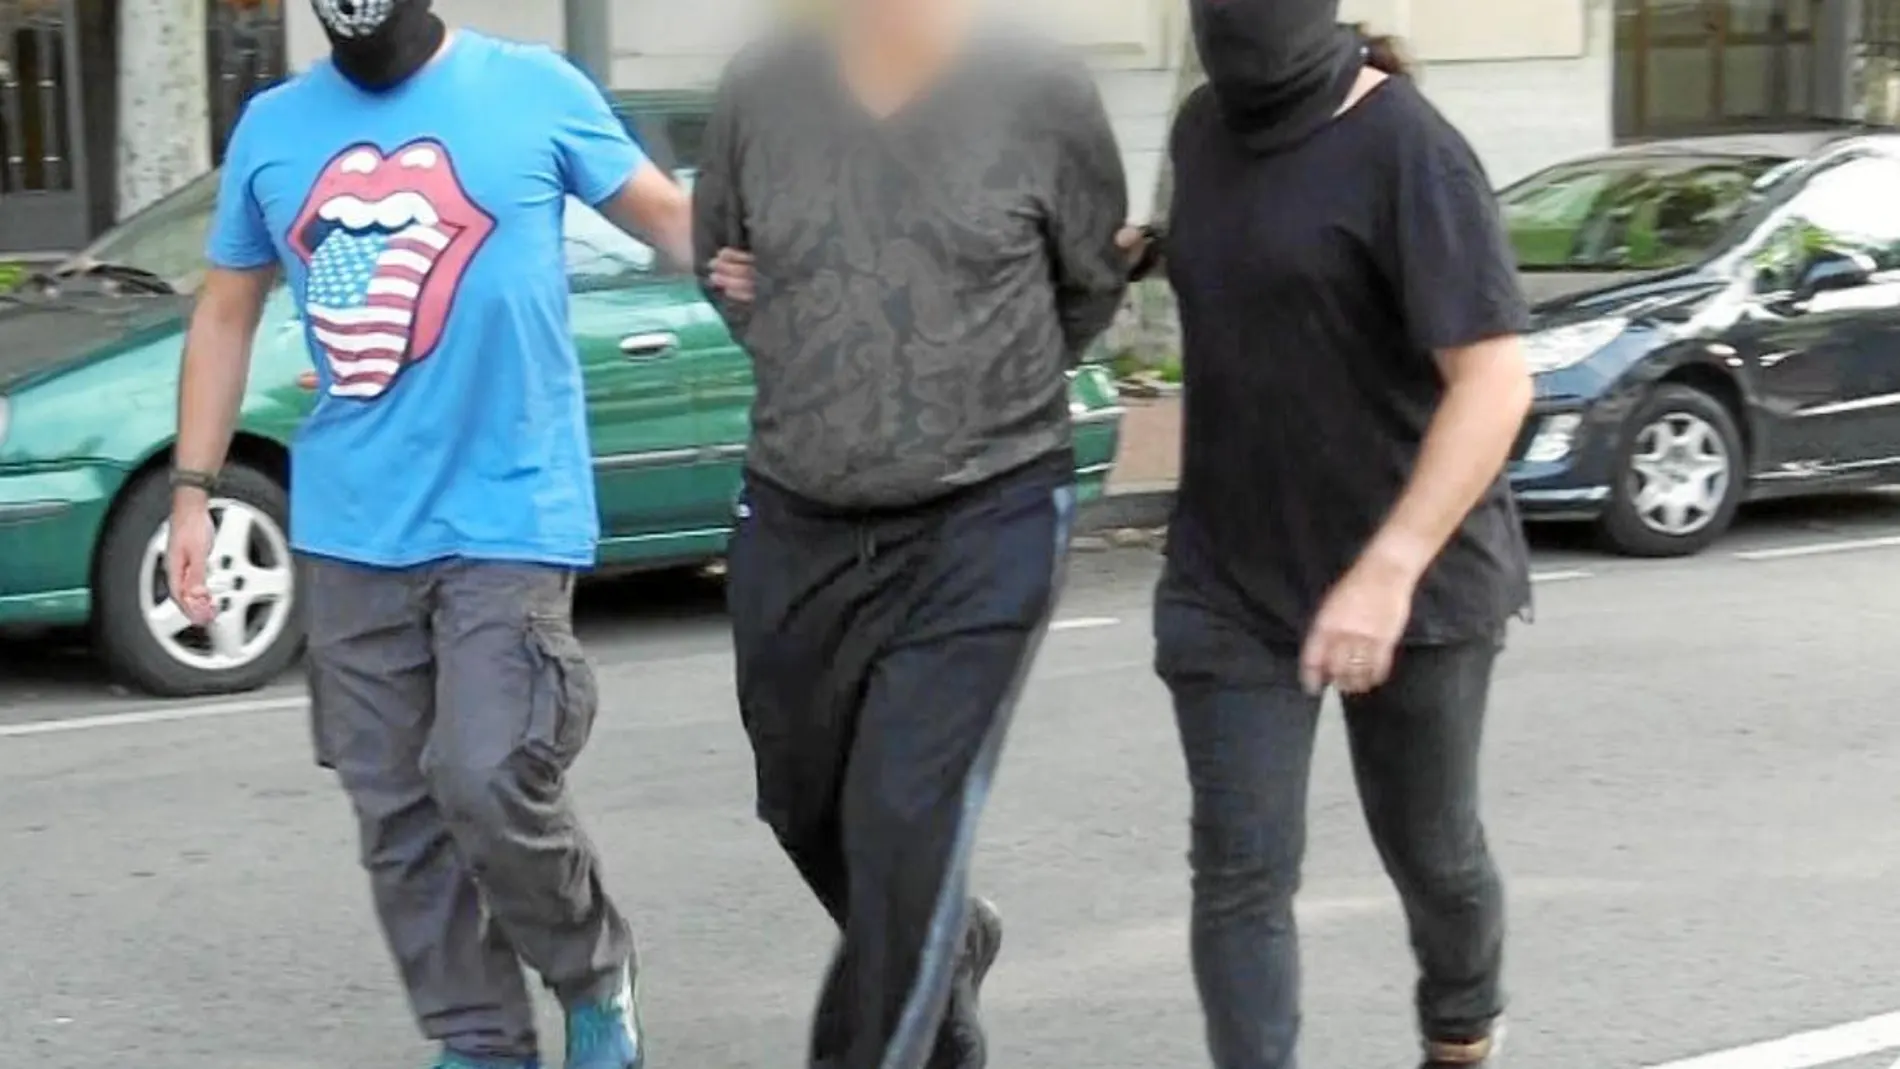 Entre los quince detenidos se encuentra el considerado cabecilla de una de las dos bandas mafiosas desarticuladas / Foto: Mossos d'esquadra